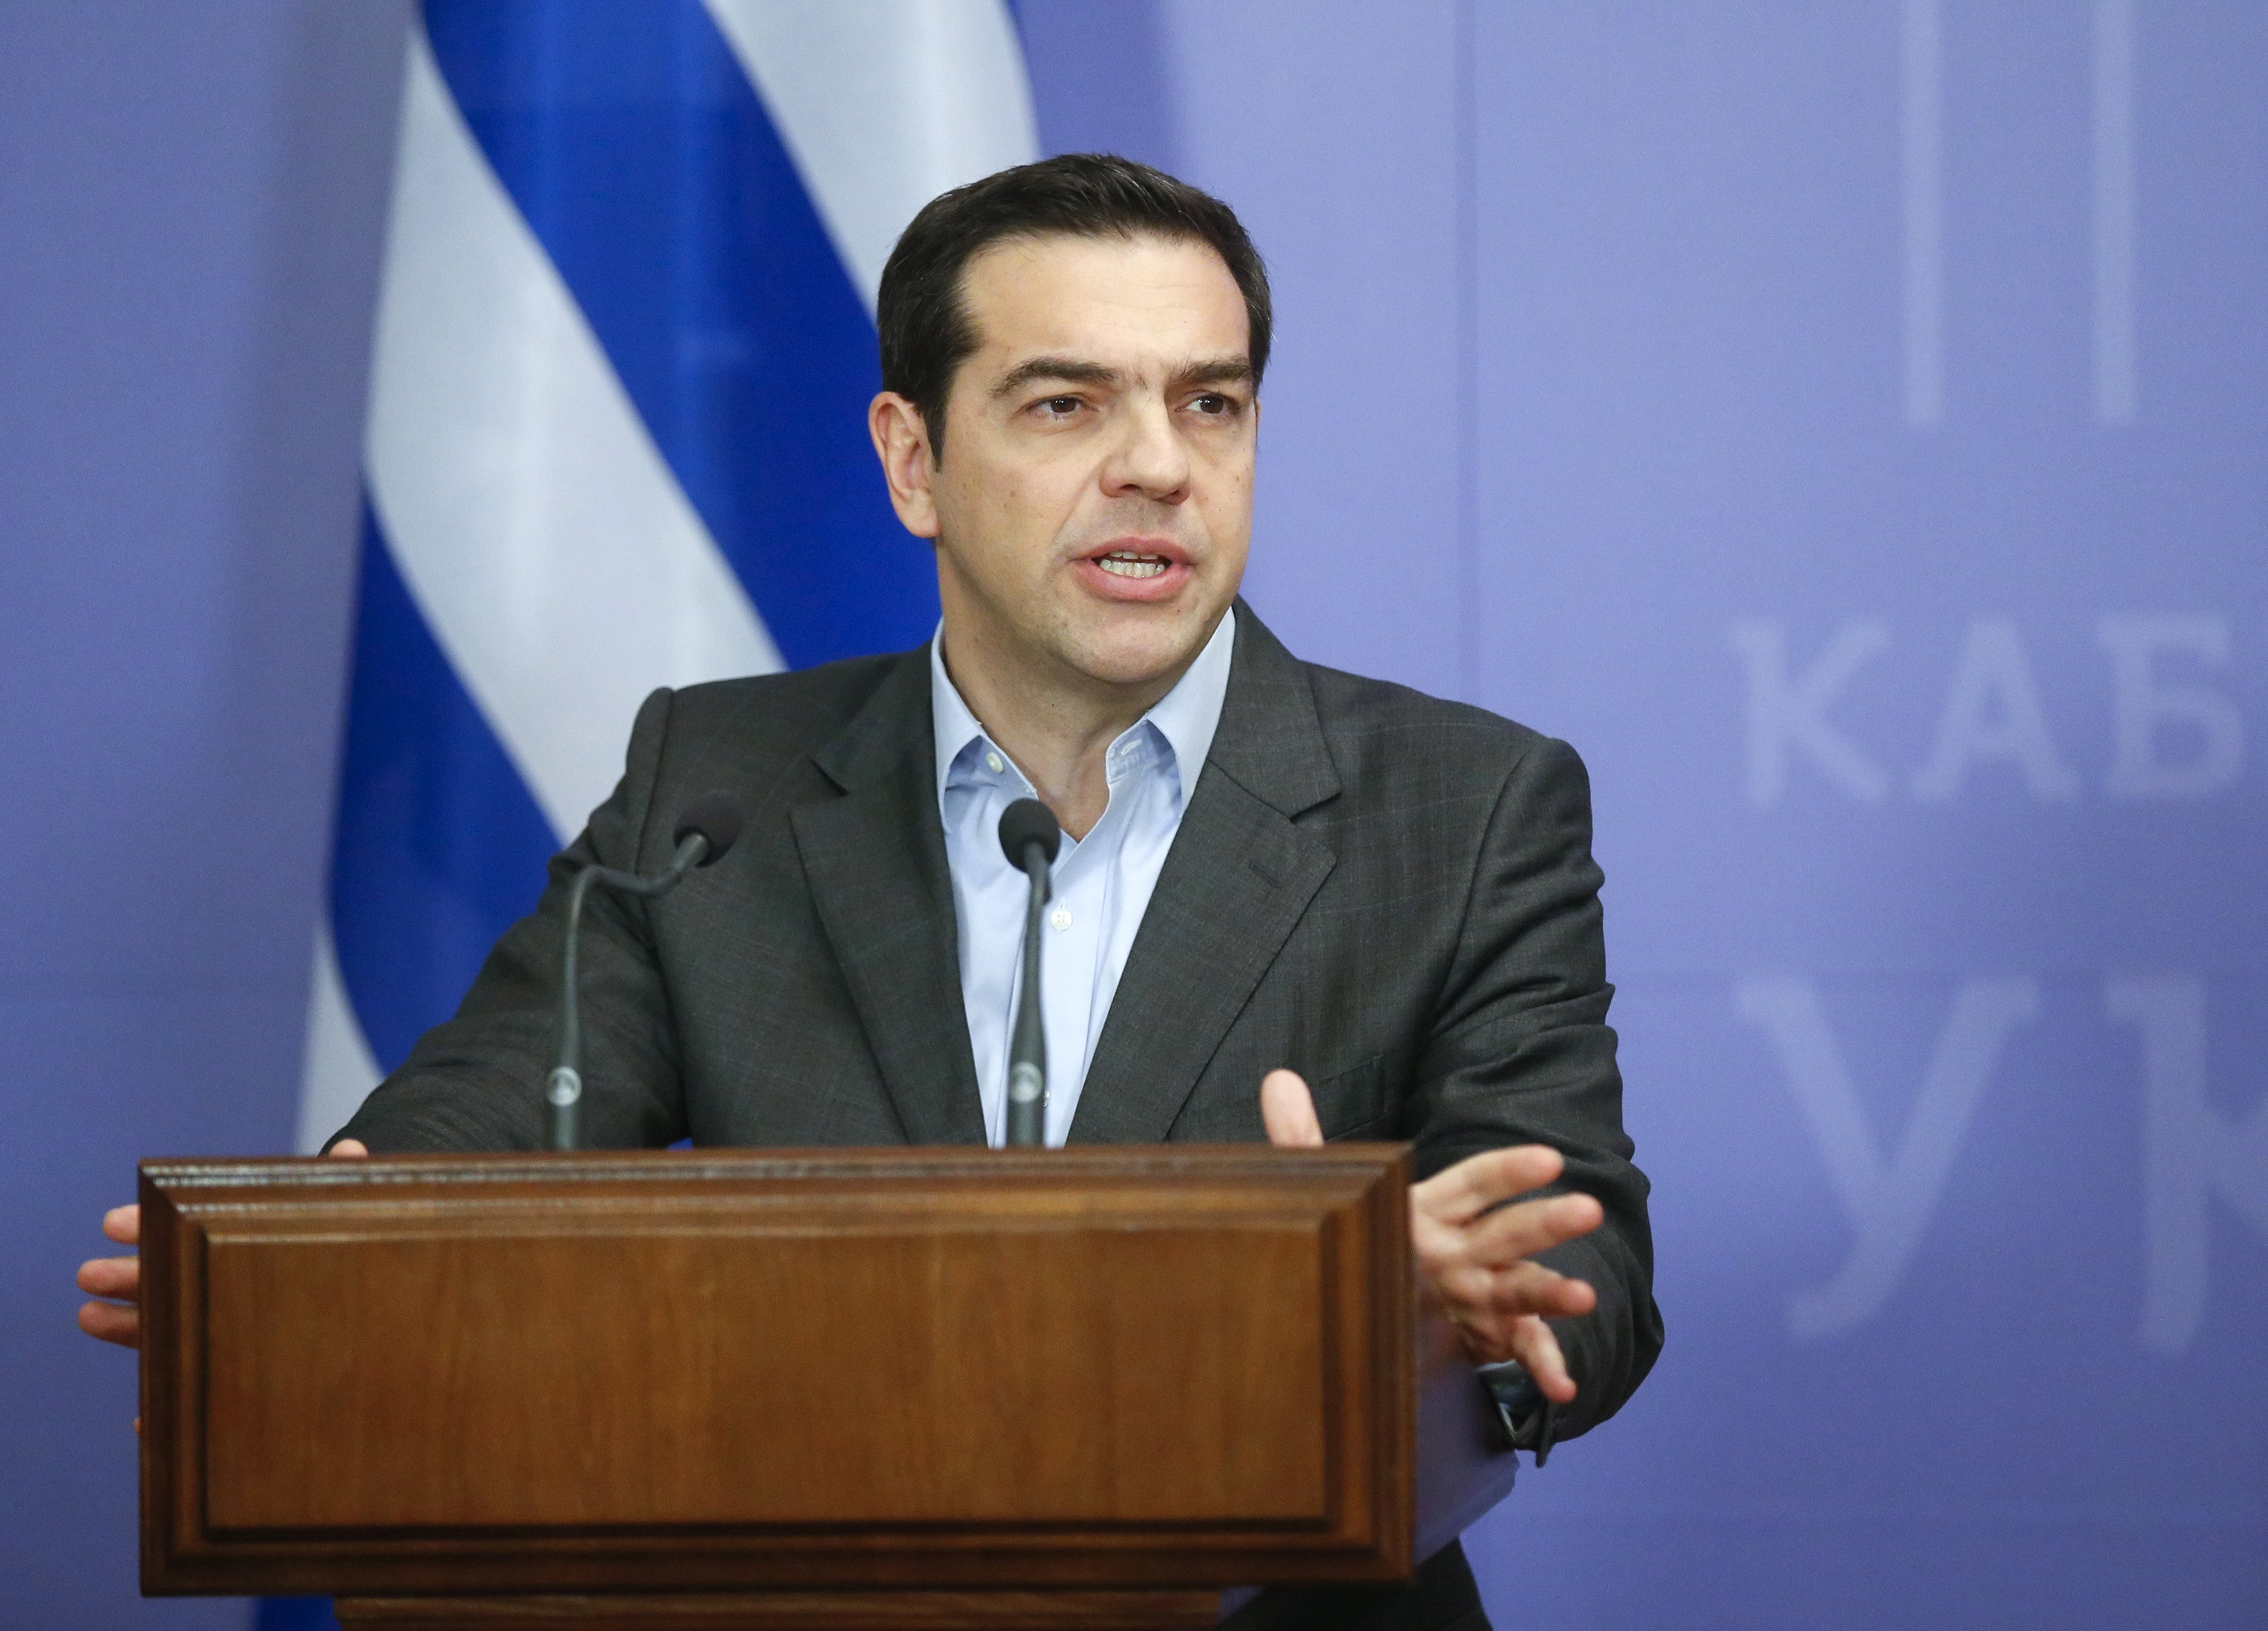 El primer ministro Alexis Tsipras expresó que solo aceptará soluciones encaminadas a resolver la deuda soberana.